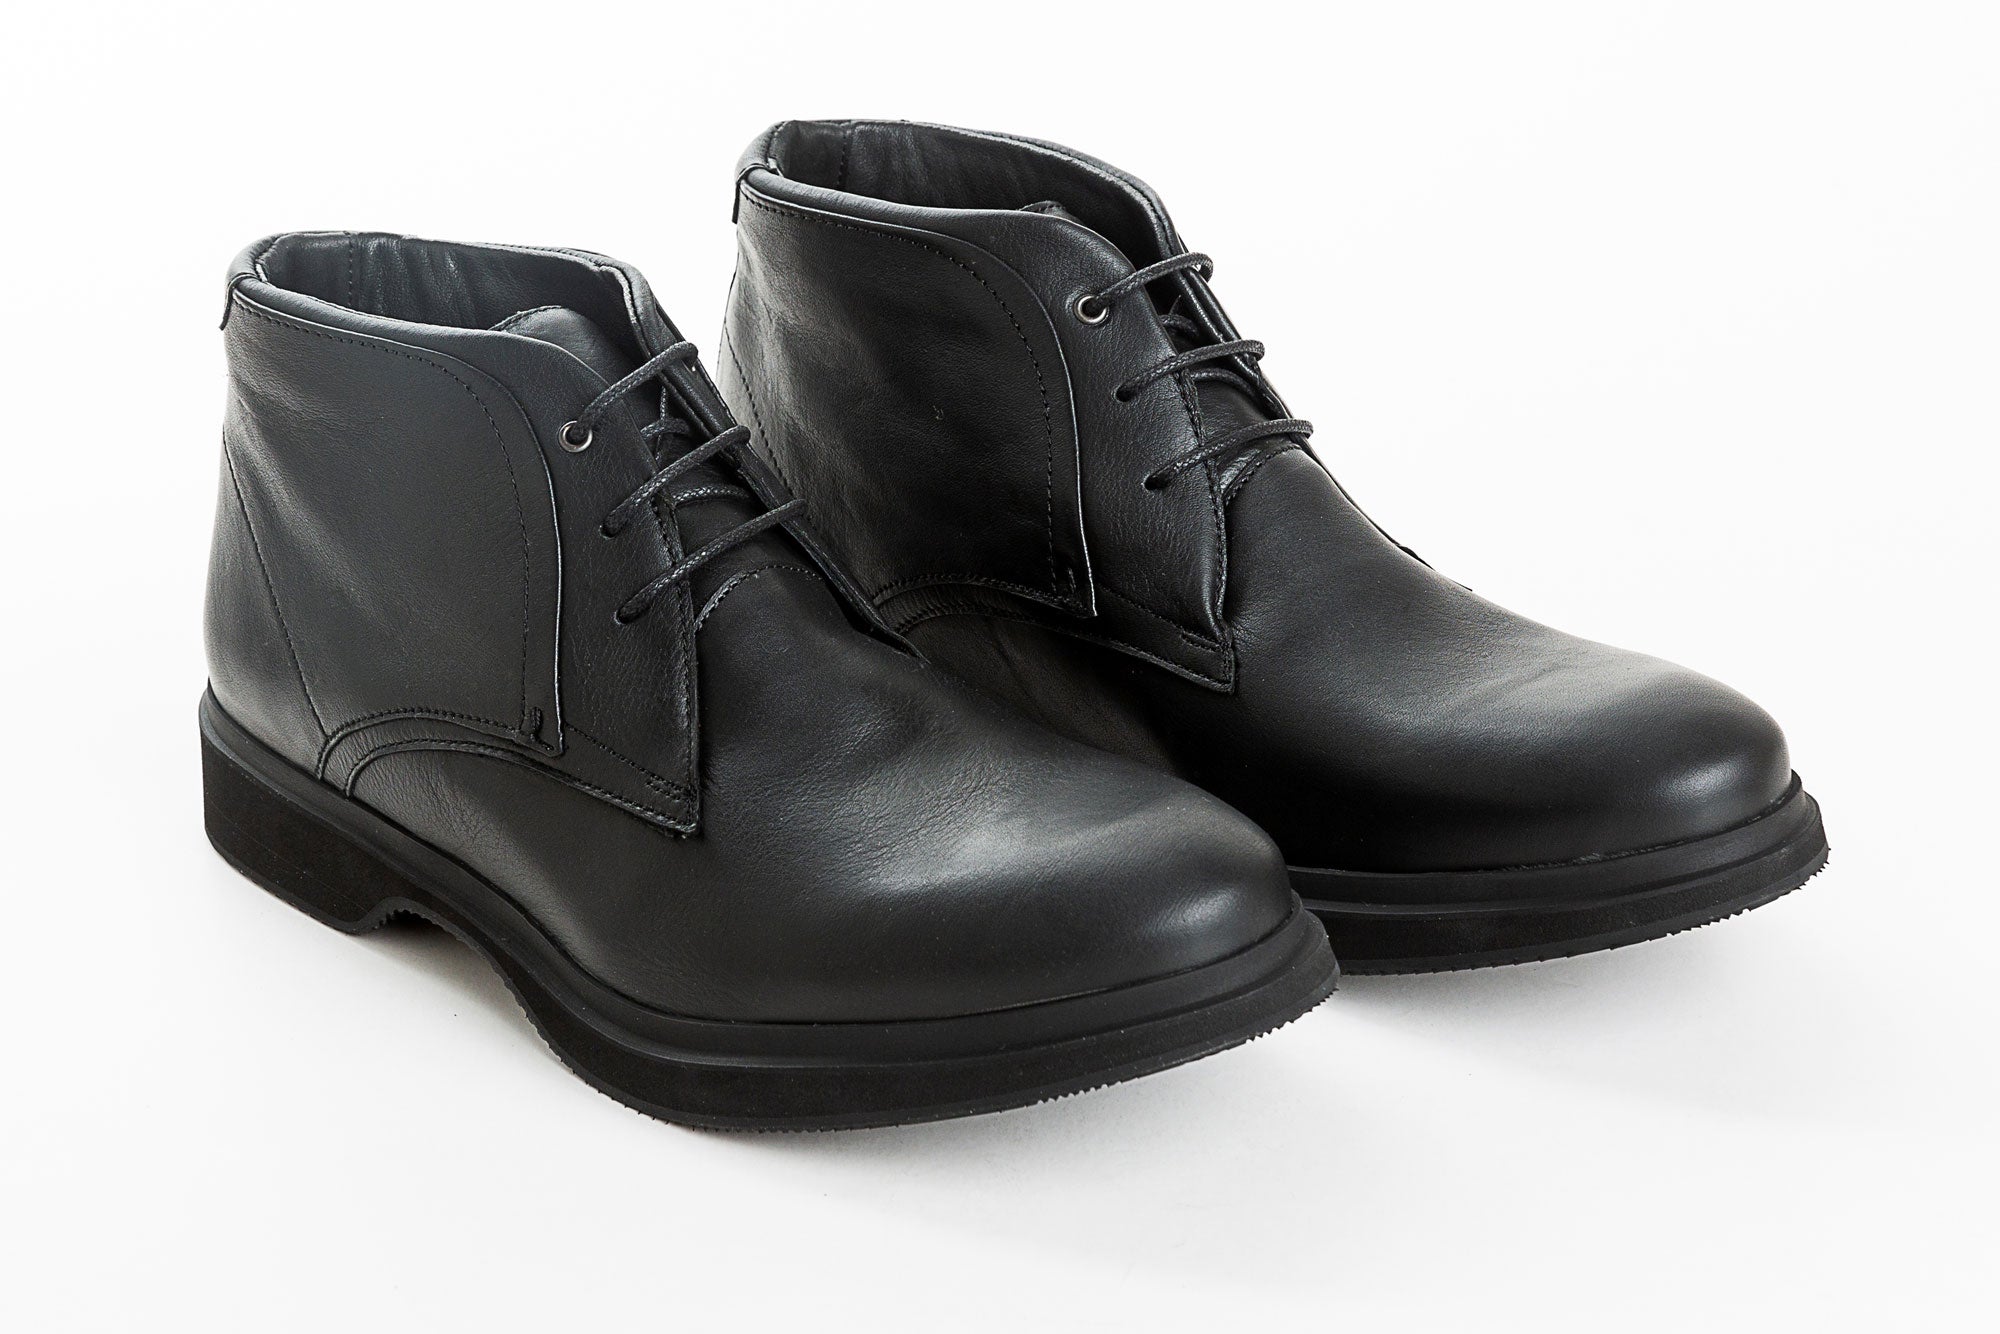 Park Avenue Cap-toe Oxford Dress Boot | Men's Boots | Allen Edmonds